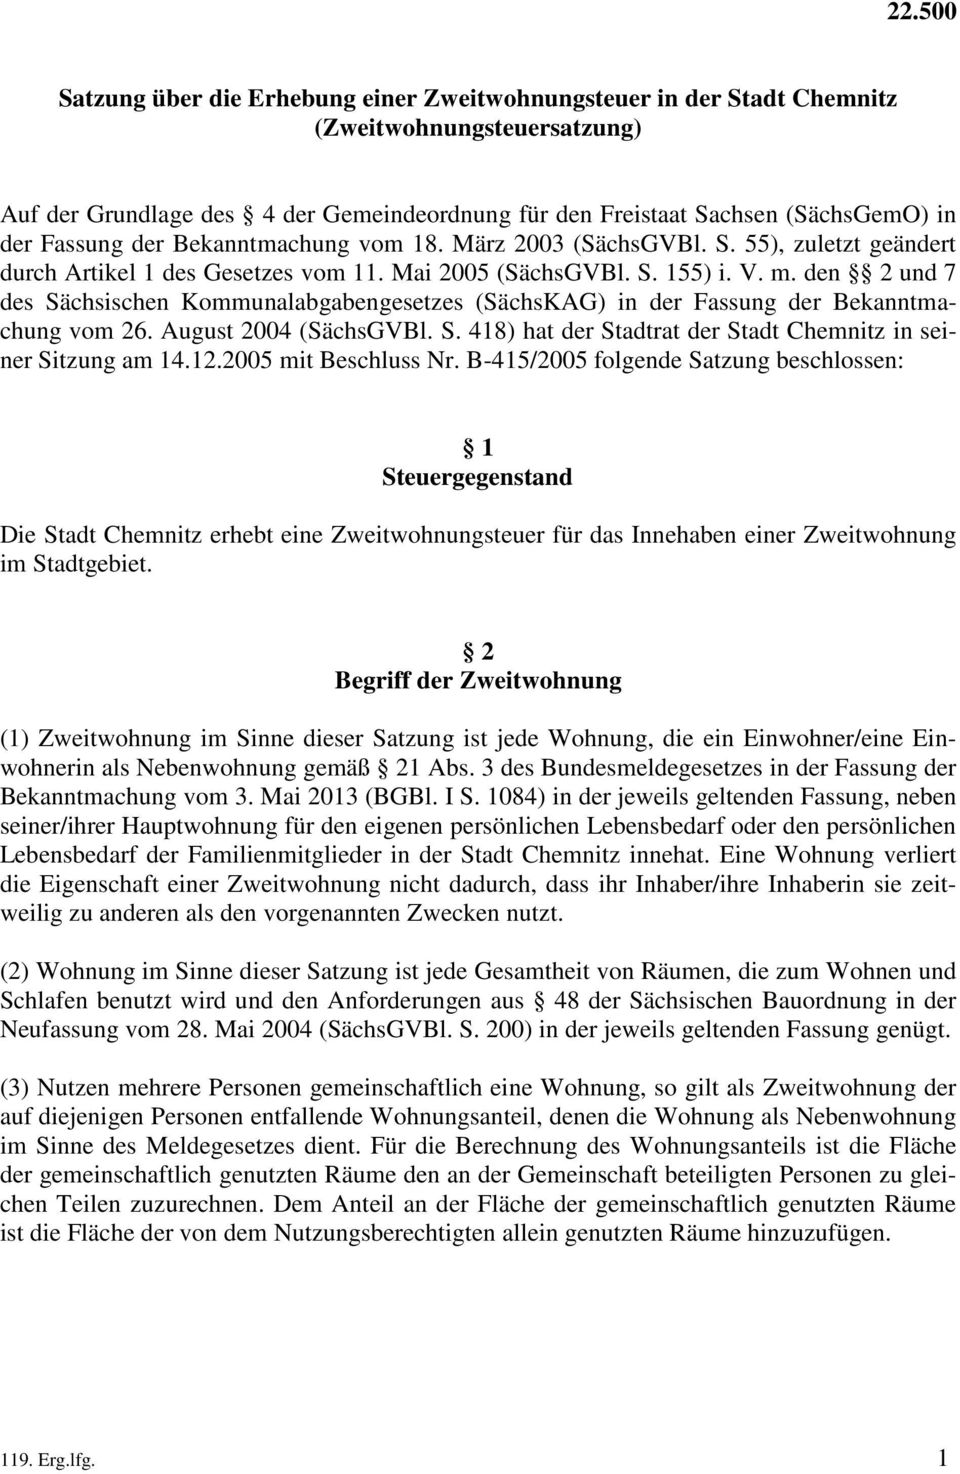 den 2 und 7 des Sächsischen Kommunalabgabengesetzes (SächsKAG) in der Fassung der Bekanntmachung vom 26. August 2004 (SächsGVBl. S. 418) hat der Stadtrat der Stadt Chemnitz in seiner Sitzung am 14.12.